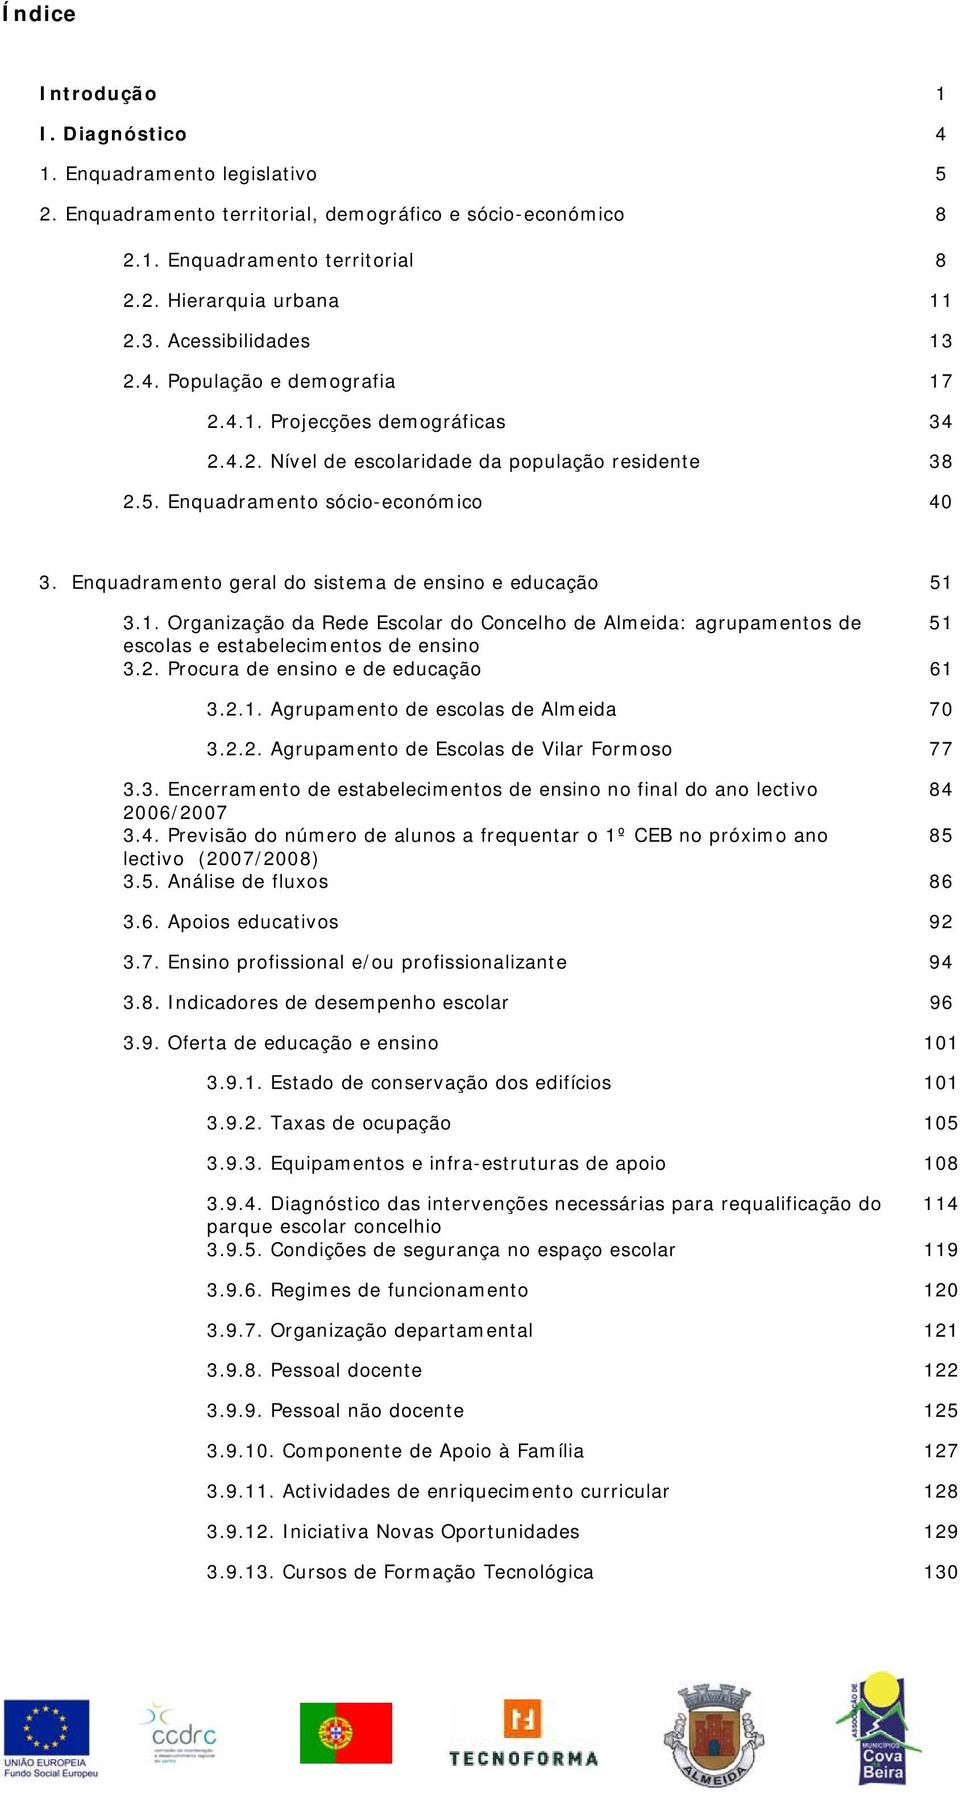 Enquadramento geral do sistema de ensino e educação 51 3.1. Organização da Rede Escolar do Concelho de Almeida: agrupamentos de 51 escolas e estabelecimentos de ensino 3.2.